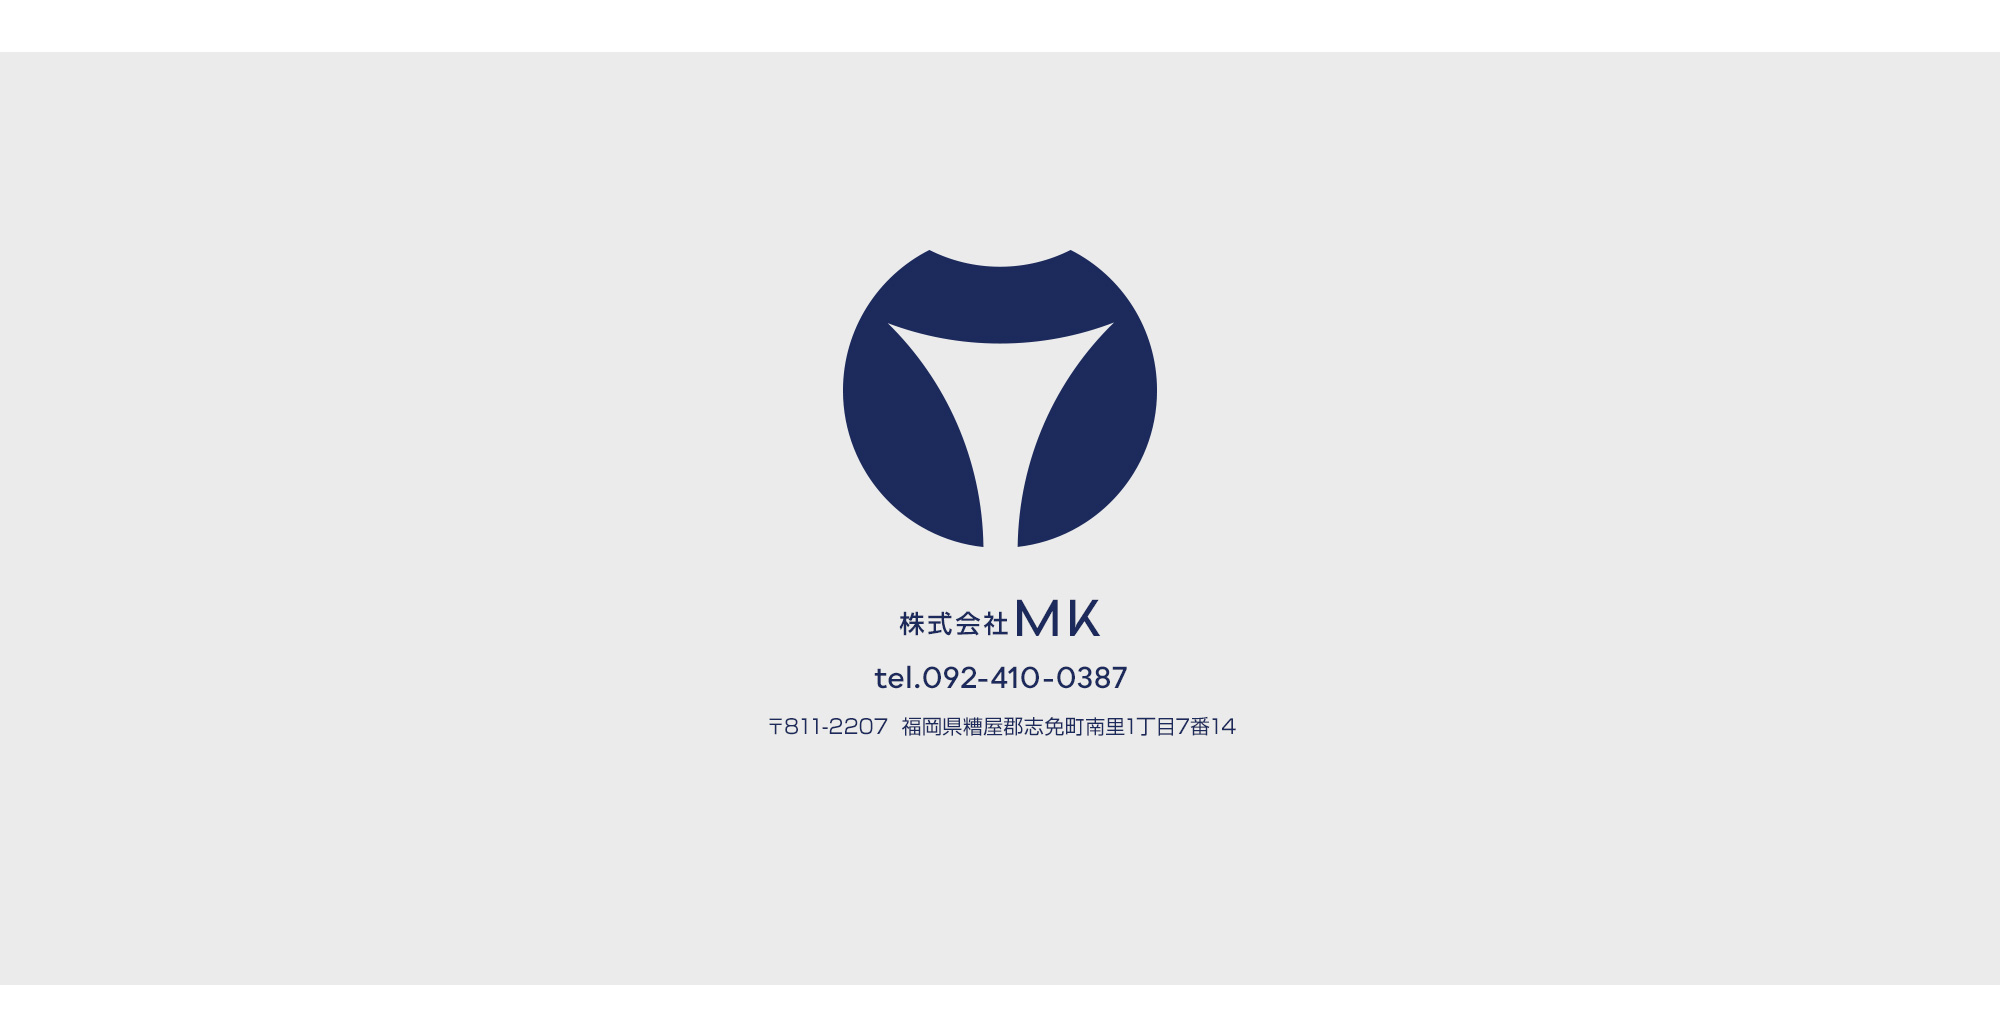 株式会社MK